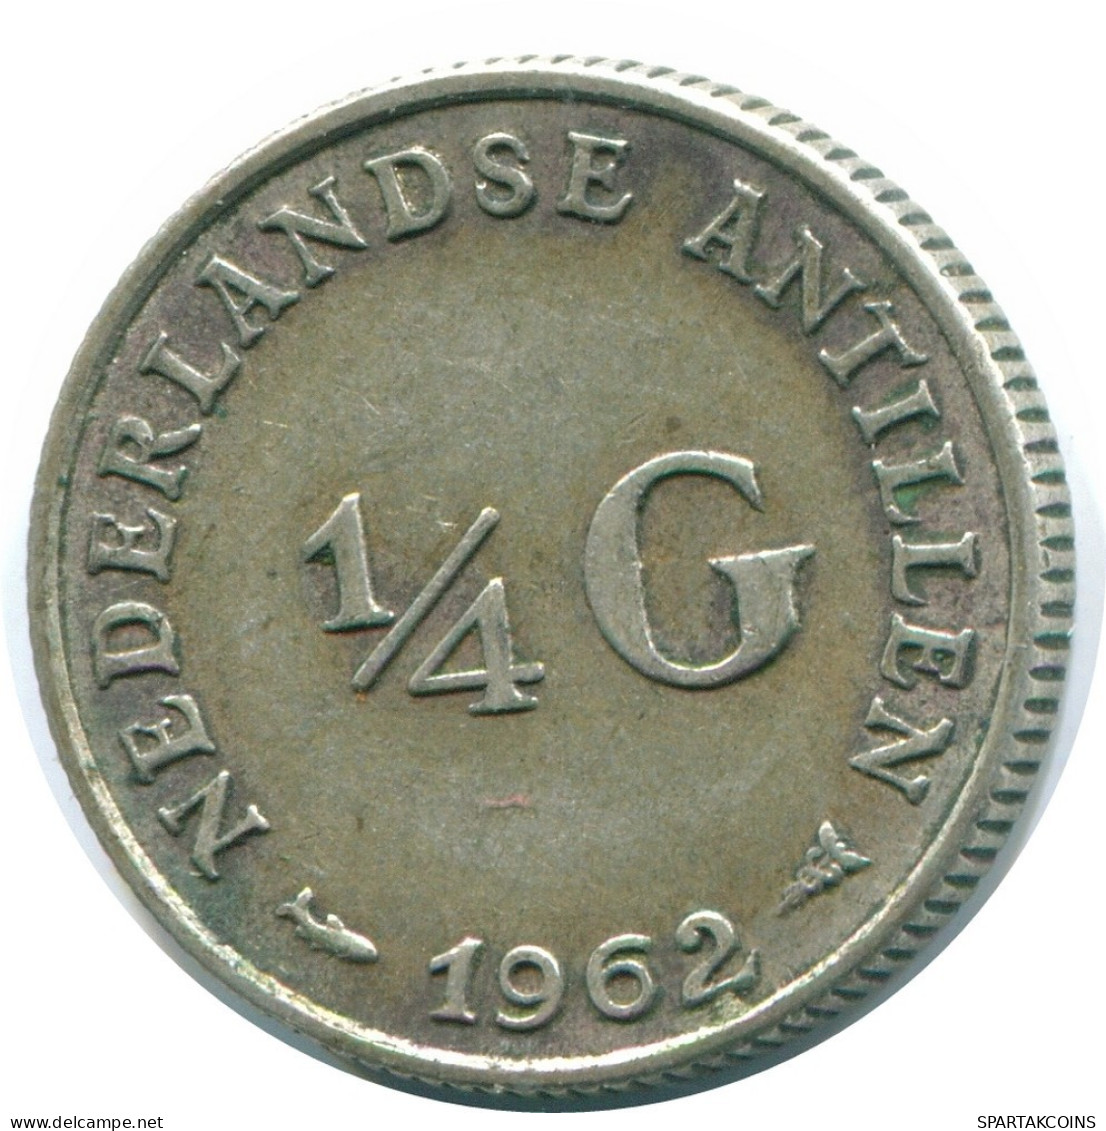 1/4 GULDEN 1962 NIEDERLÄNDISCHE ANTILLEN SILBER Koloniale Münze #NL11156.4.D.A - Antille Olandesi